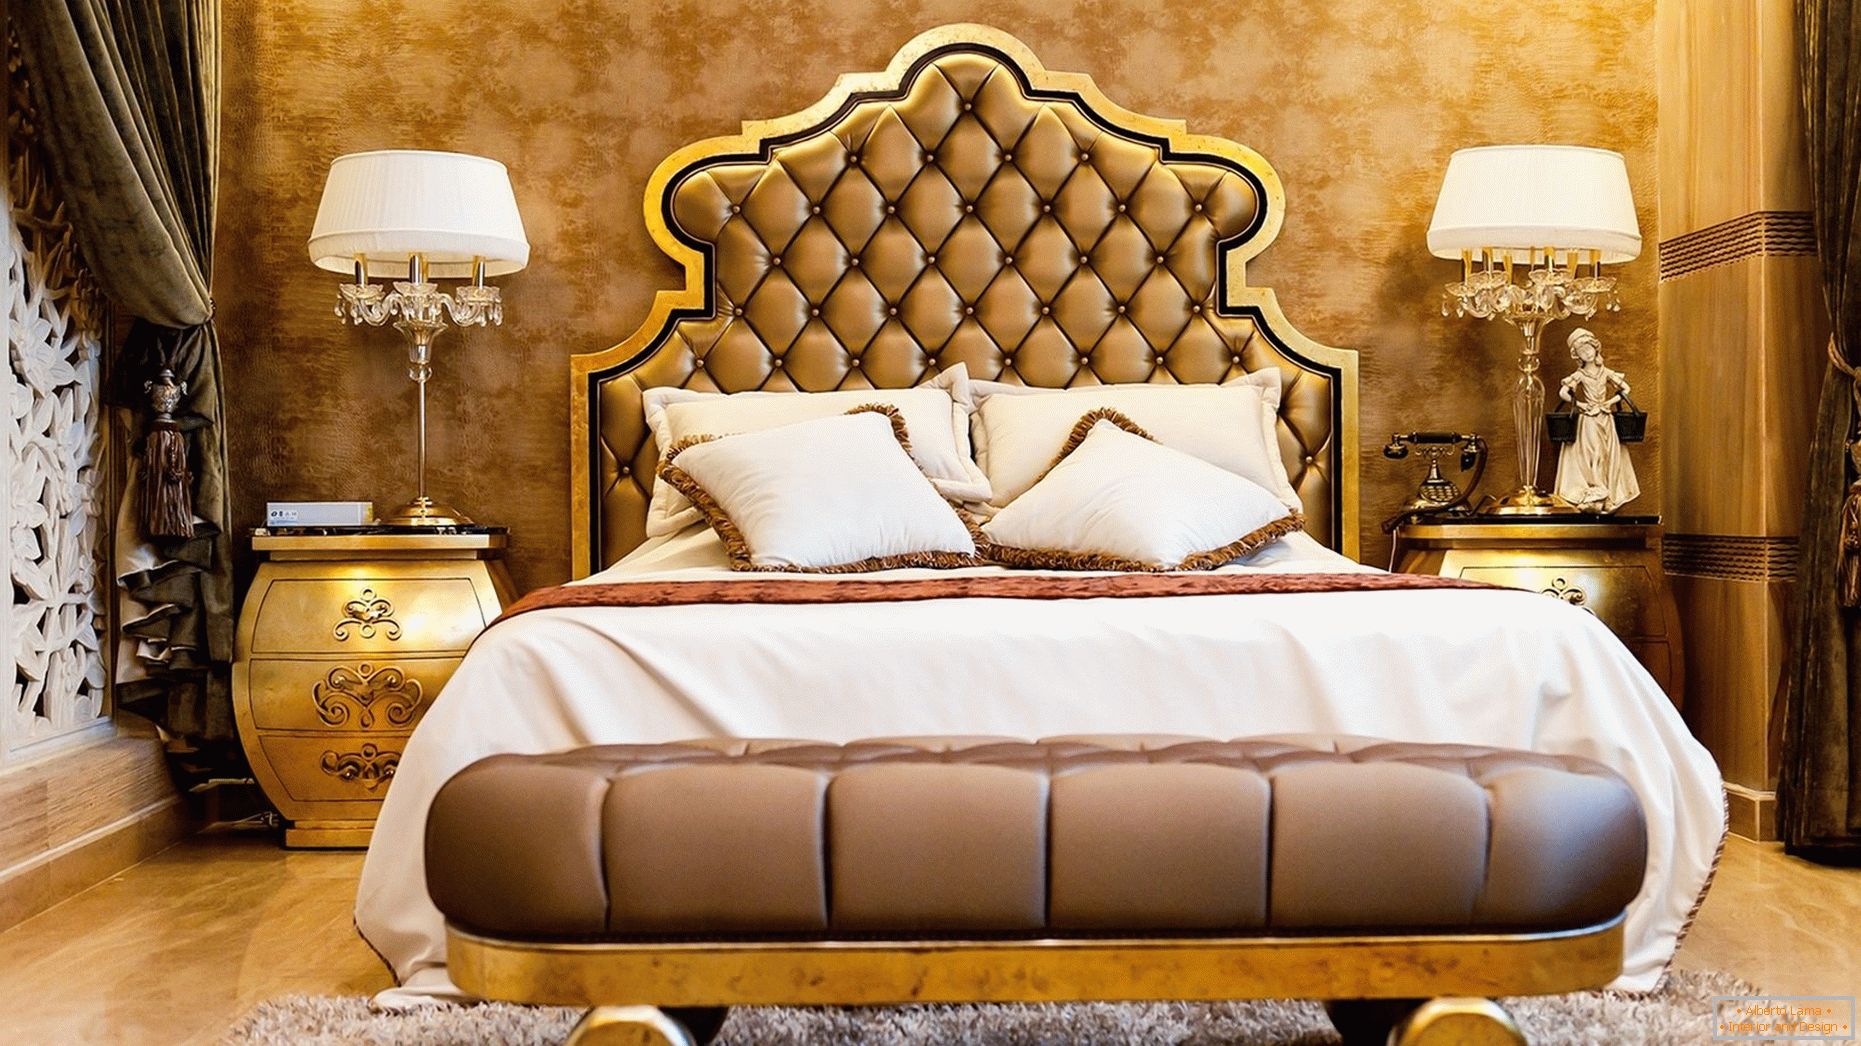 Papel pintado de oro en el diseño de habitaciones